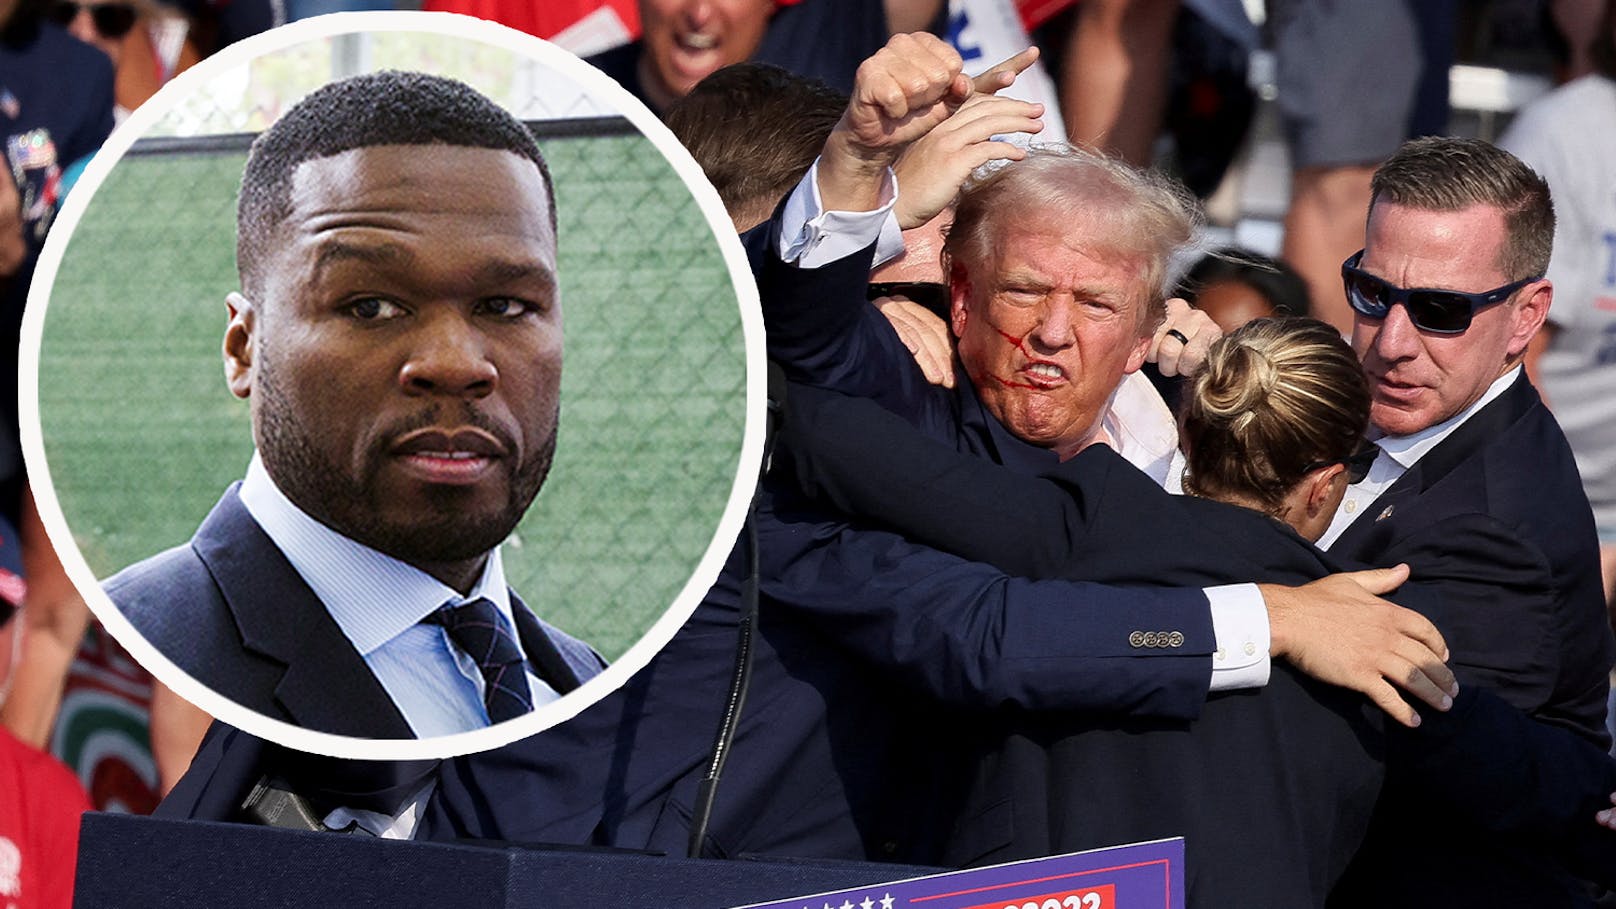 "Kenne das Gefühl": 50 Cent reagiert auf Trump-Attentat